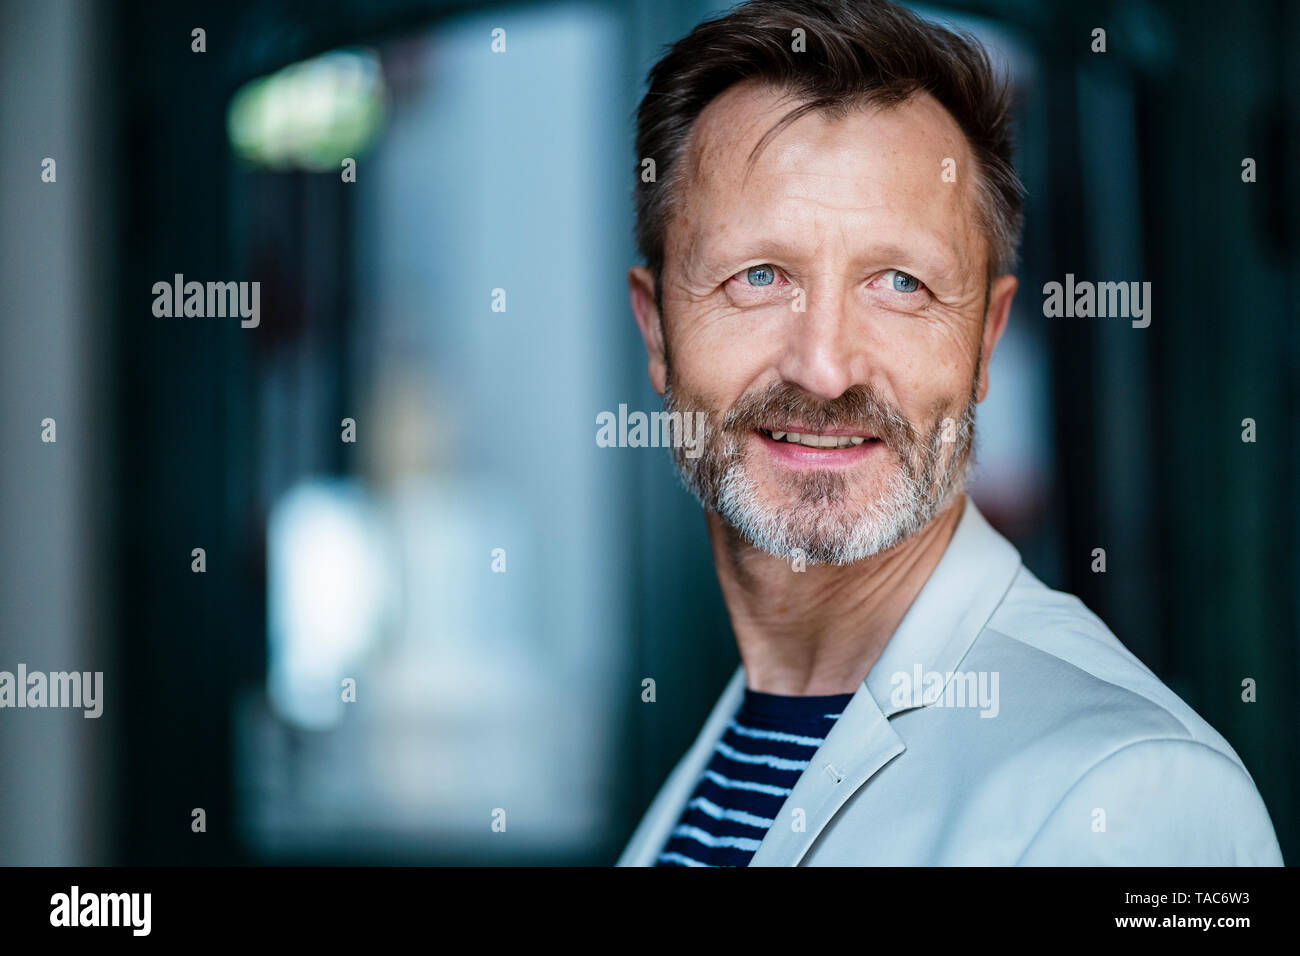 Portrait of smiling mature man avec barbe grisonnante Banque D'Images